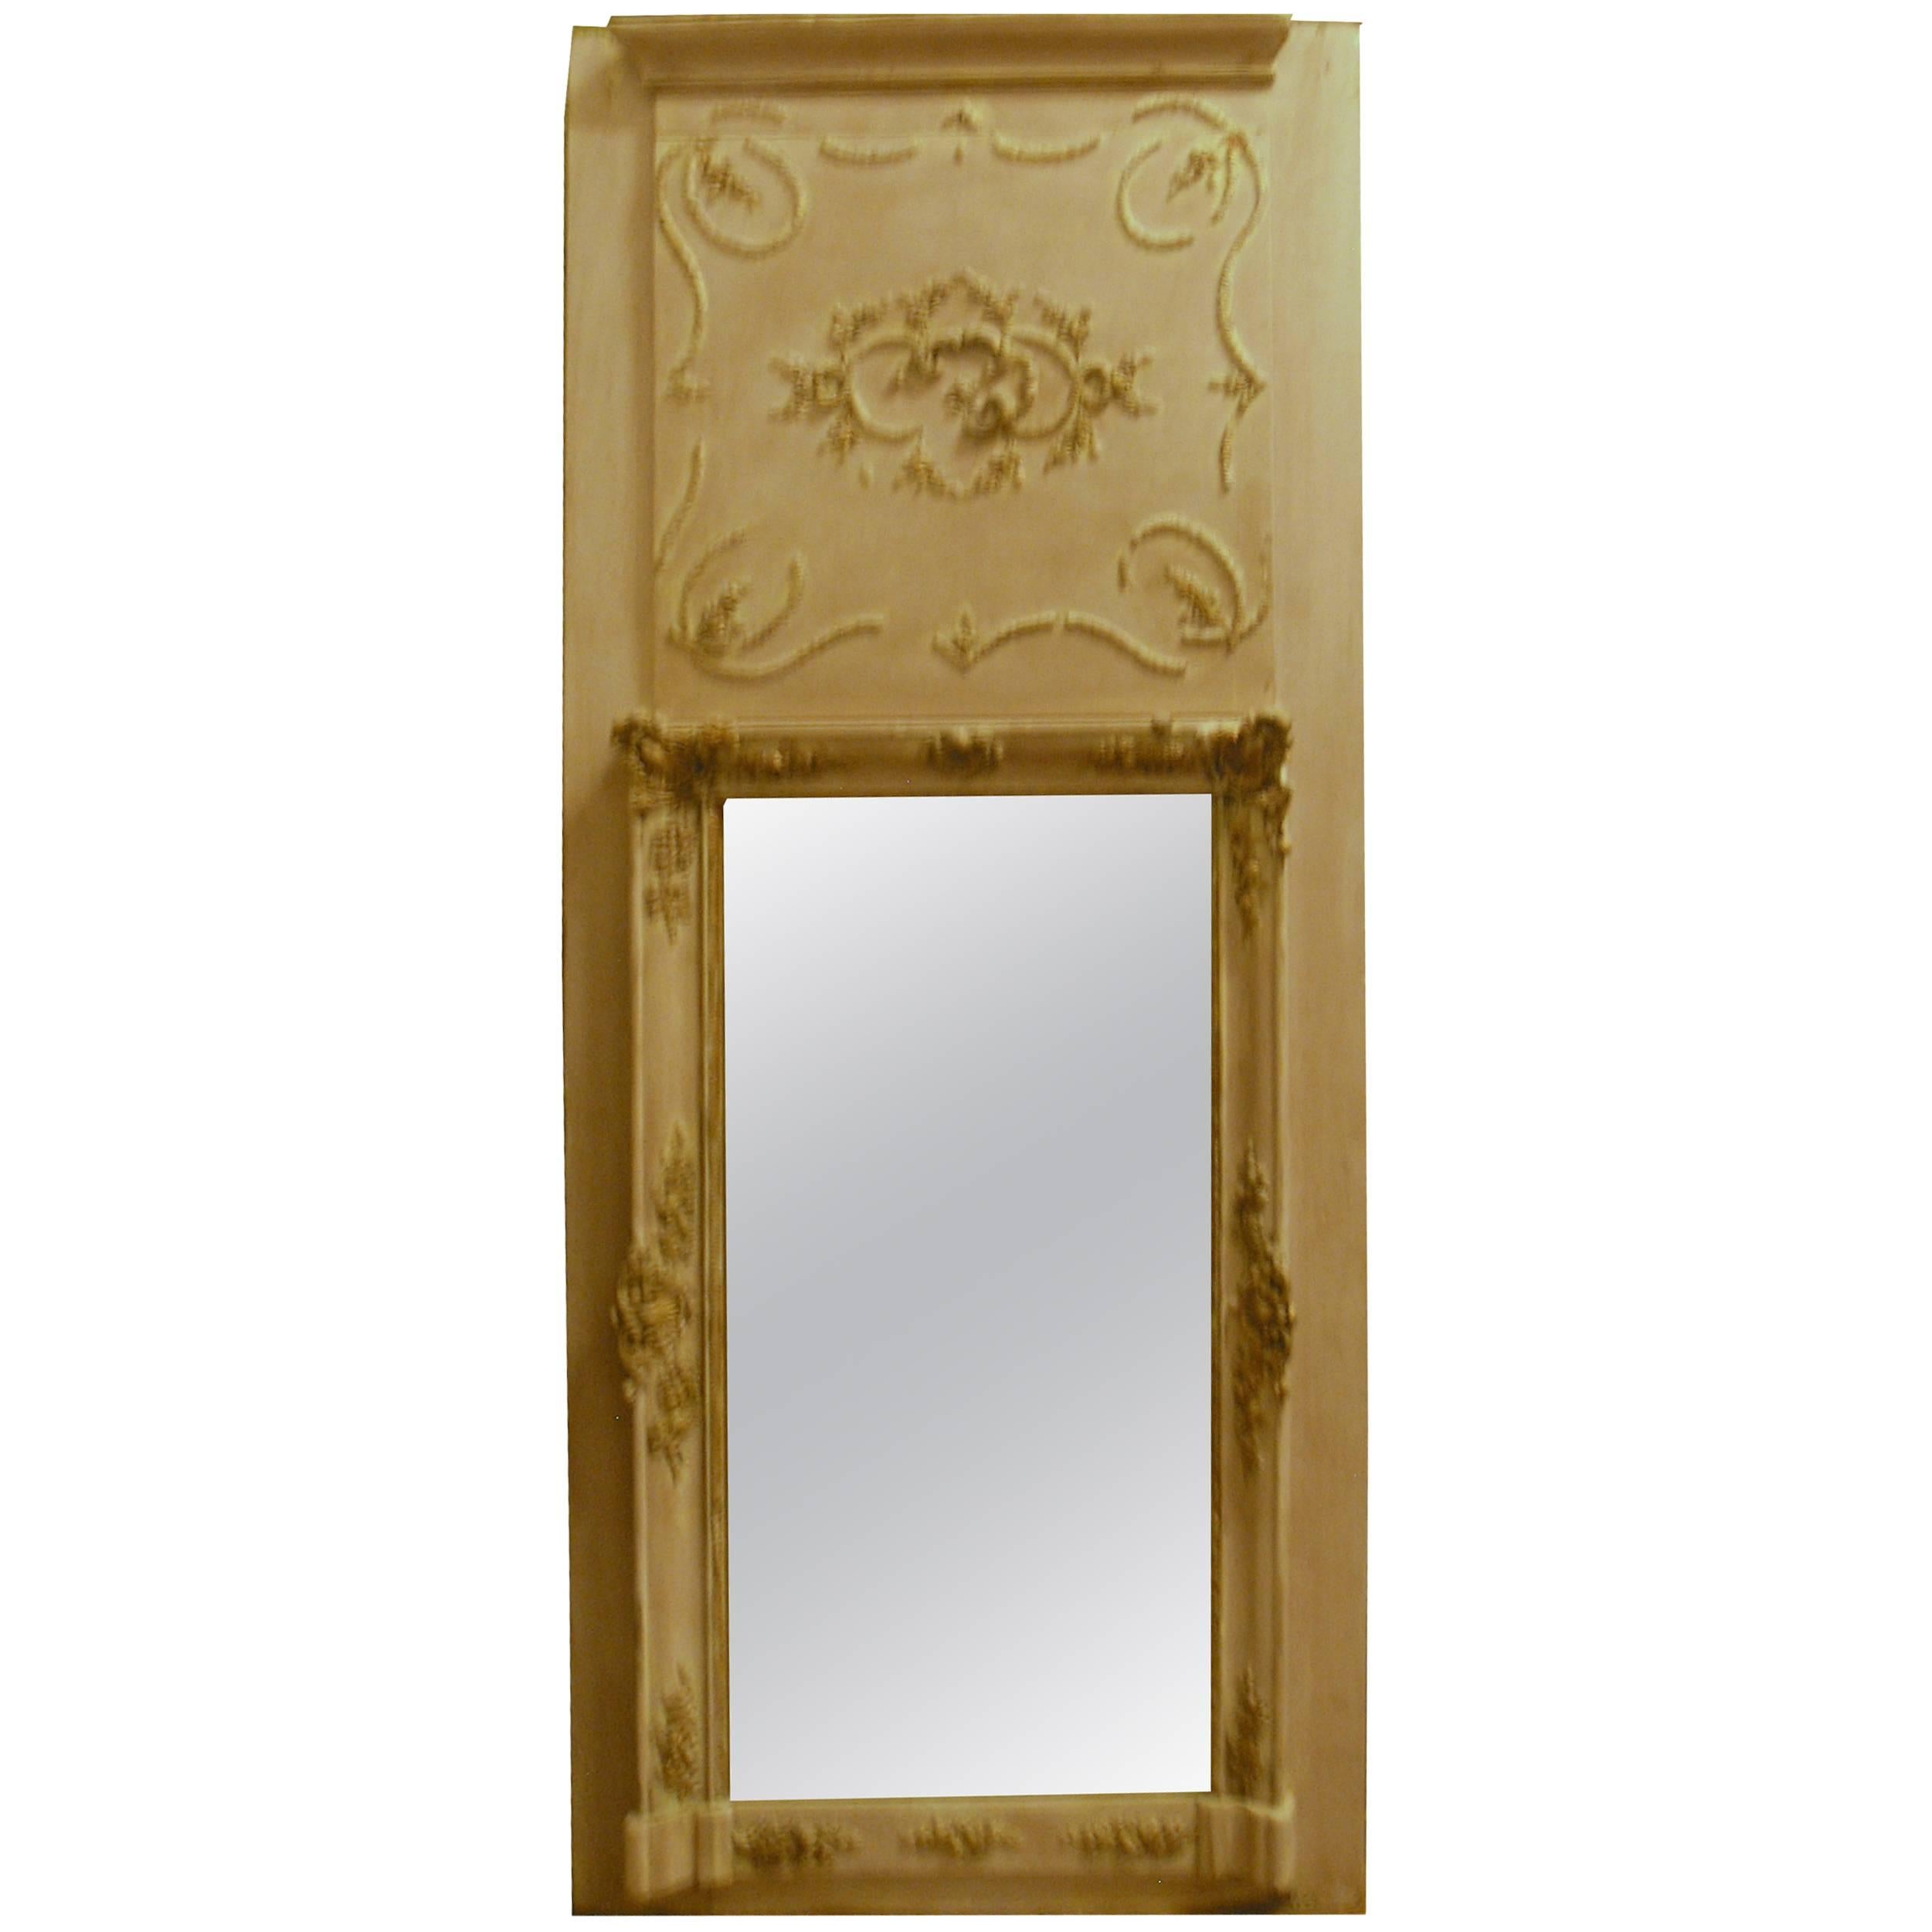 Antique Lacquered Mirror 